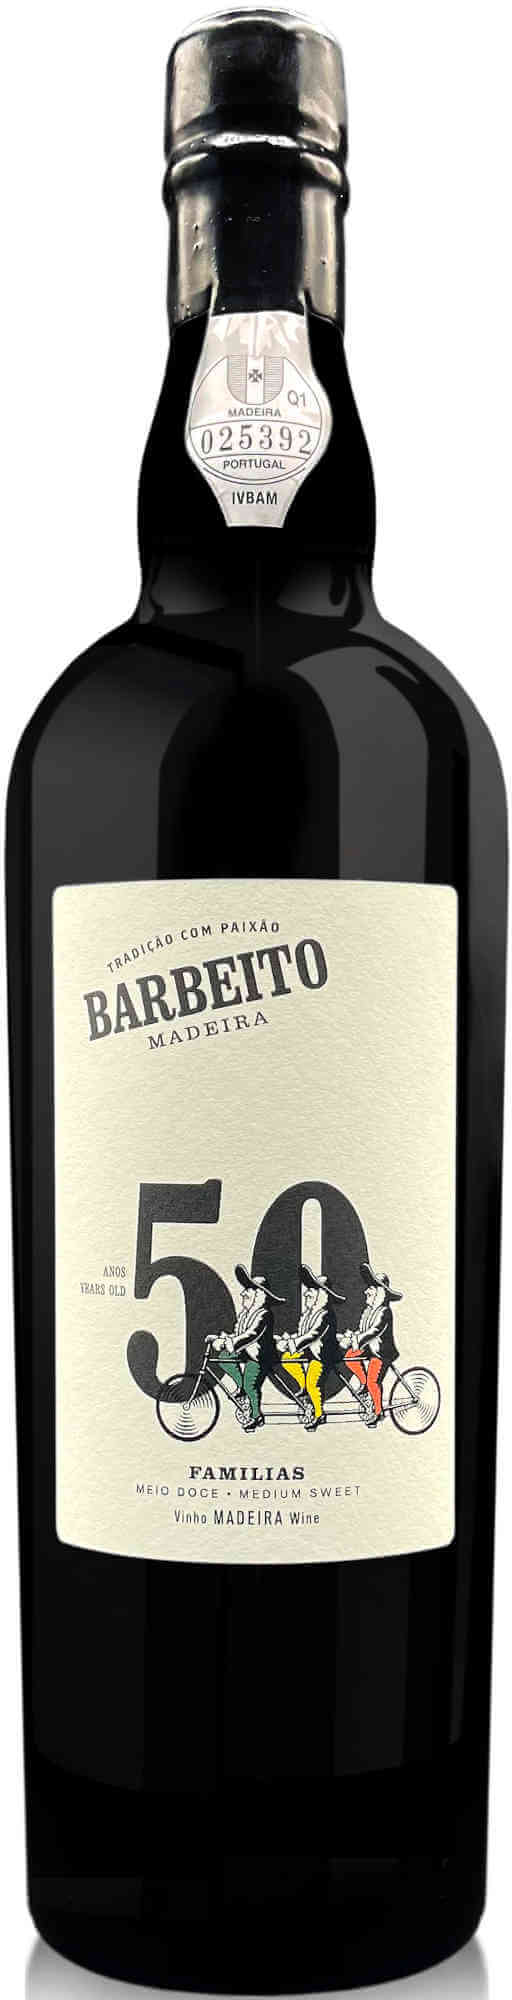 Barbeito-50-Years-Familias